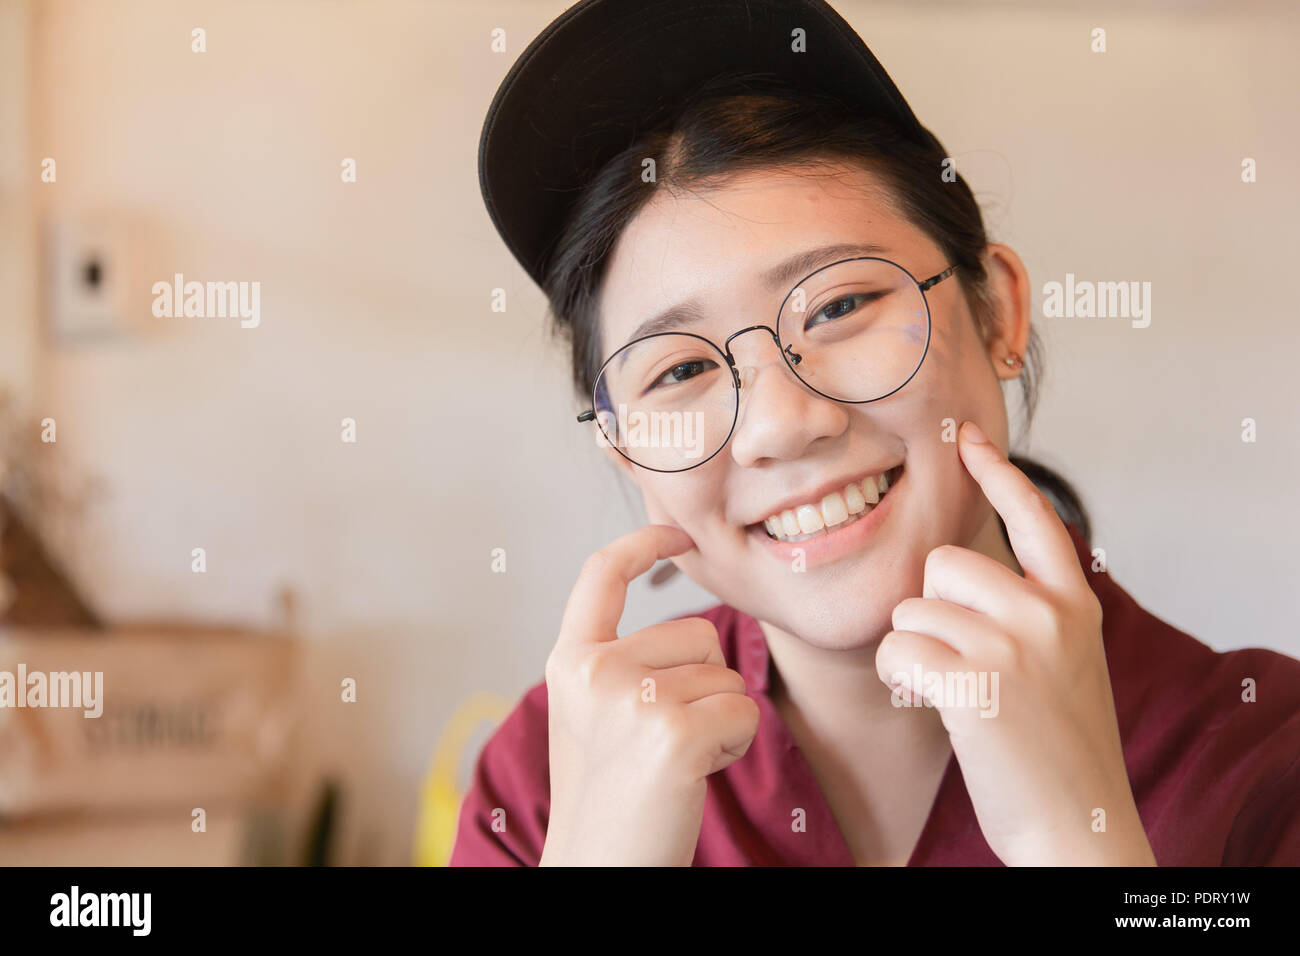 Plump Chubby teen mignon sourire dent blanche jeune étudiante asiatique avec des lunettes et un chapeau doigts joue with copy space Banque D'Images